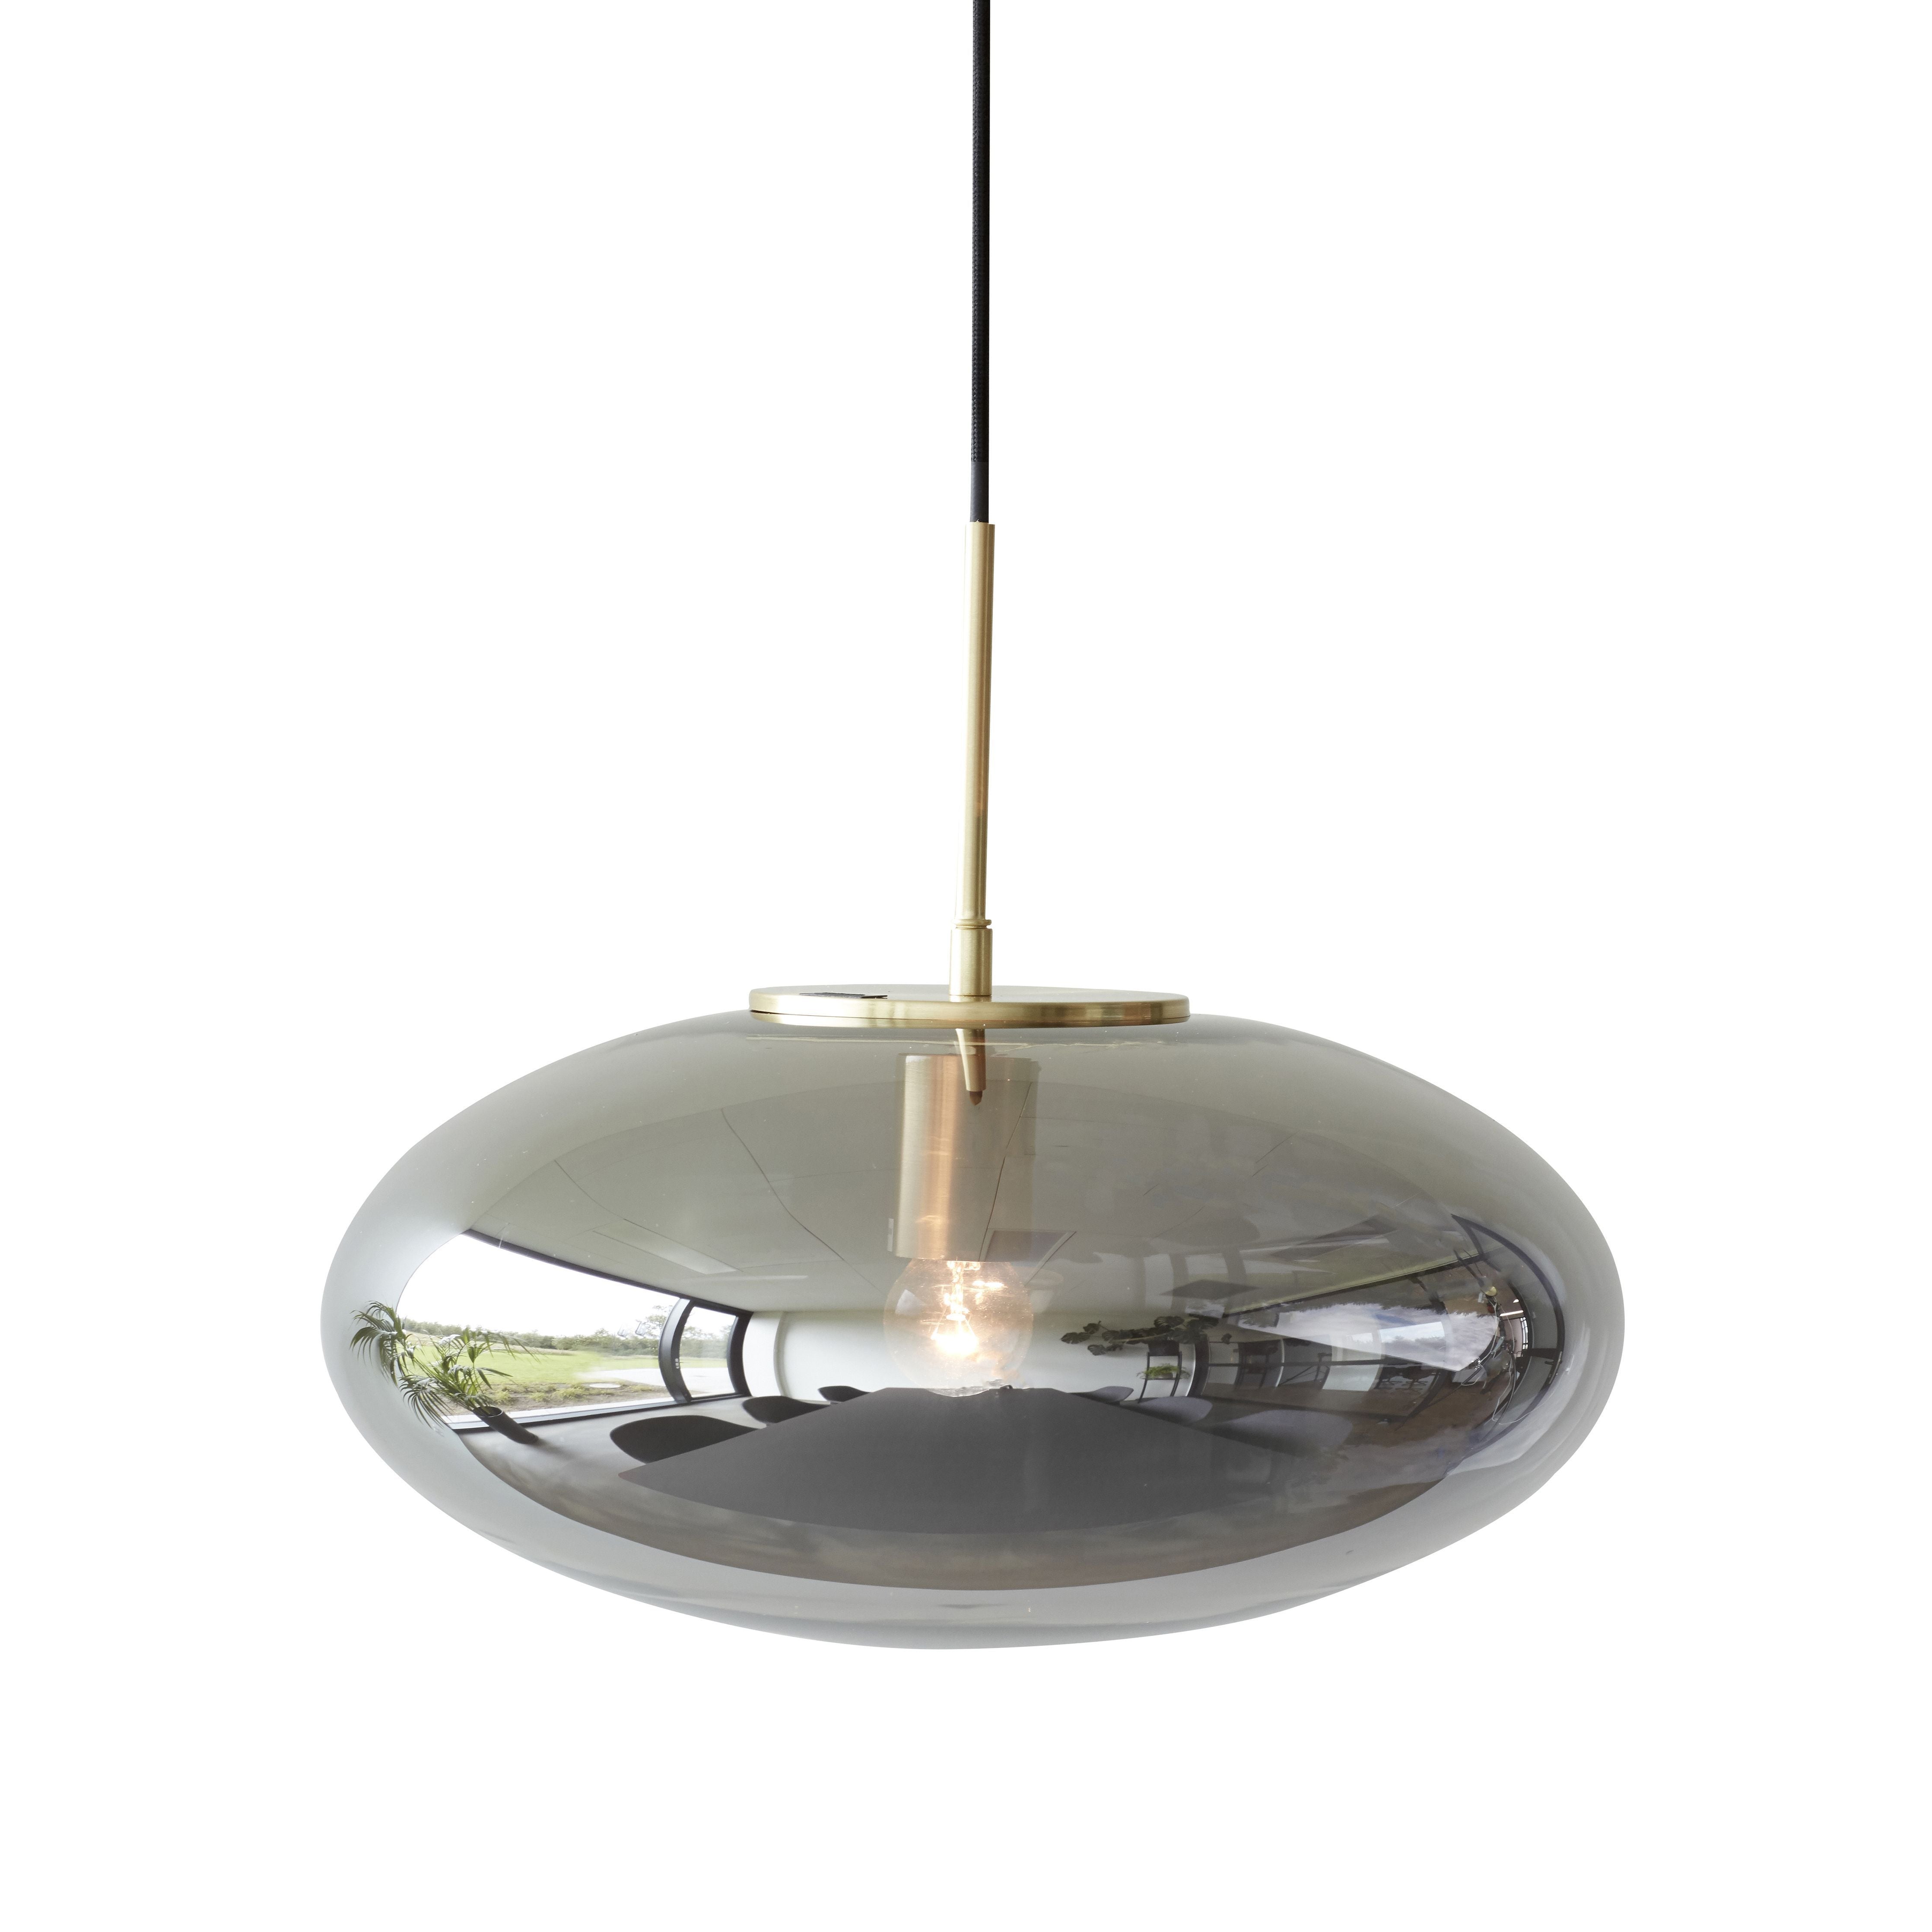 Hübsch Reflektera lampglasjärn/mässing, 40x36 cm